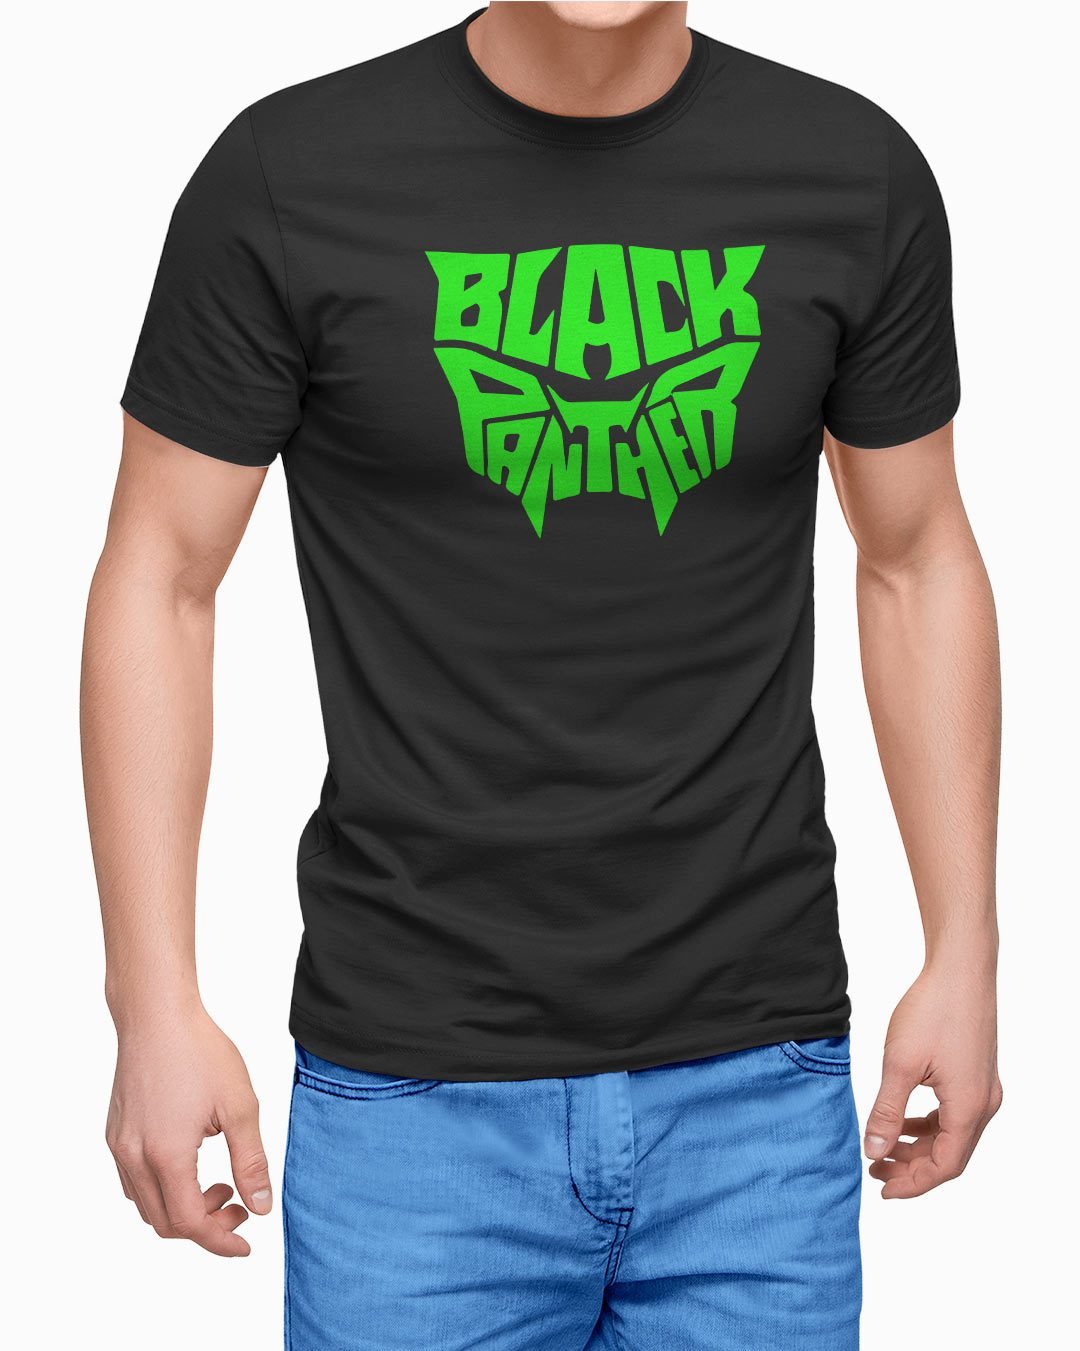 Black Panther Glow in dark Printed T-Shirt for men